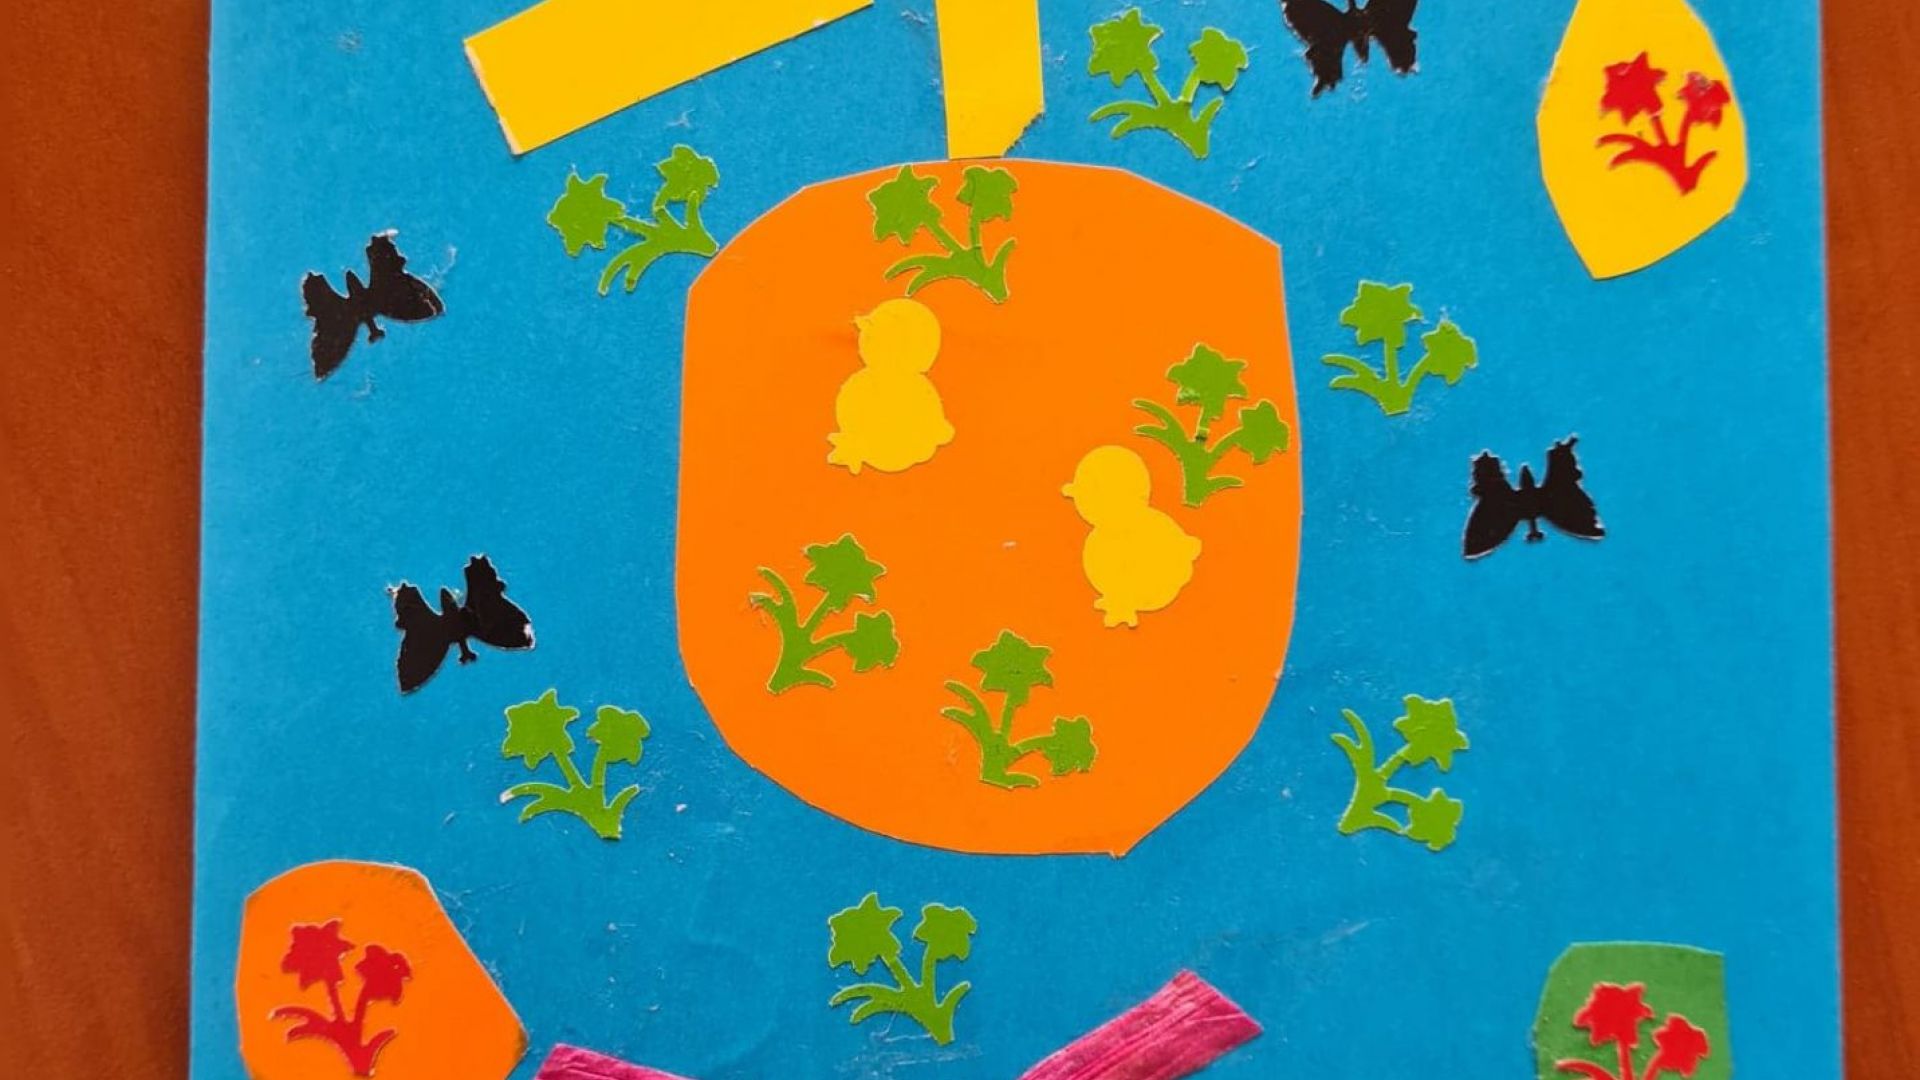 Kartka wielkanocna z zieloną trawą, trzema brązowymi zajączkami, kolorowymi kwiatami, motylami, pomarańczową pisanką z dwoma żółtymi kurczaczkami i czterema zielonymi kwiatami, z żółtym słońcem u góry i różową kokardą. Autor: Rafał T. 